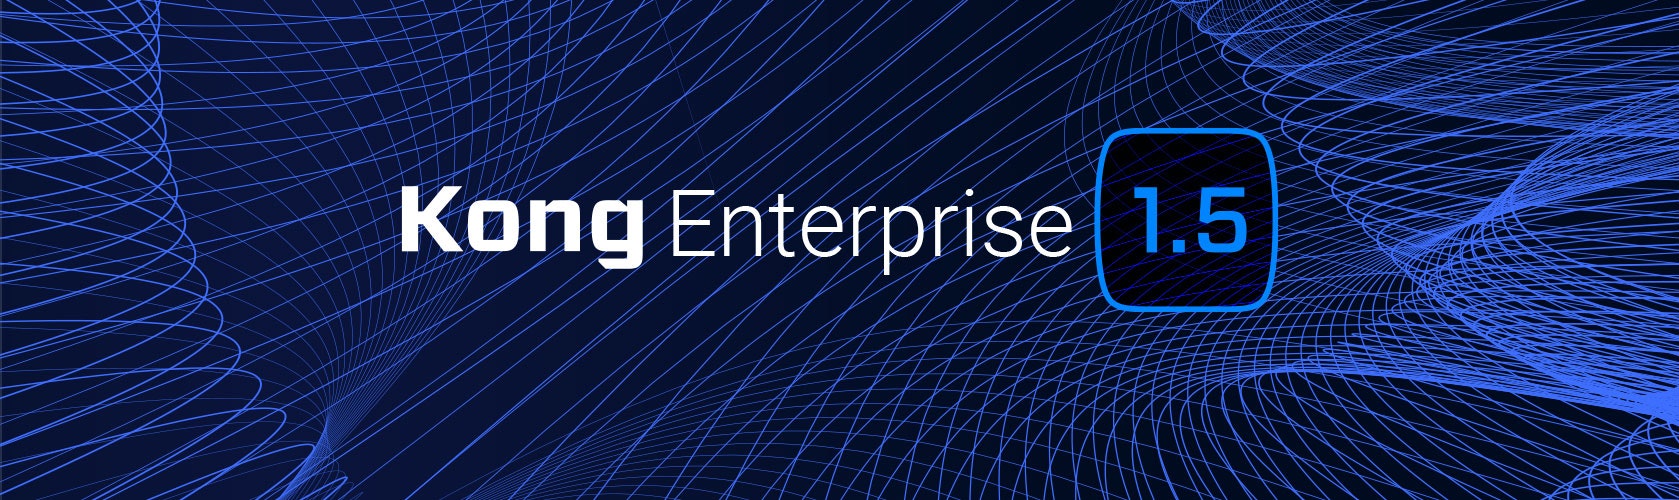 Kong Enterprise 1.5